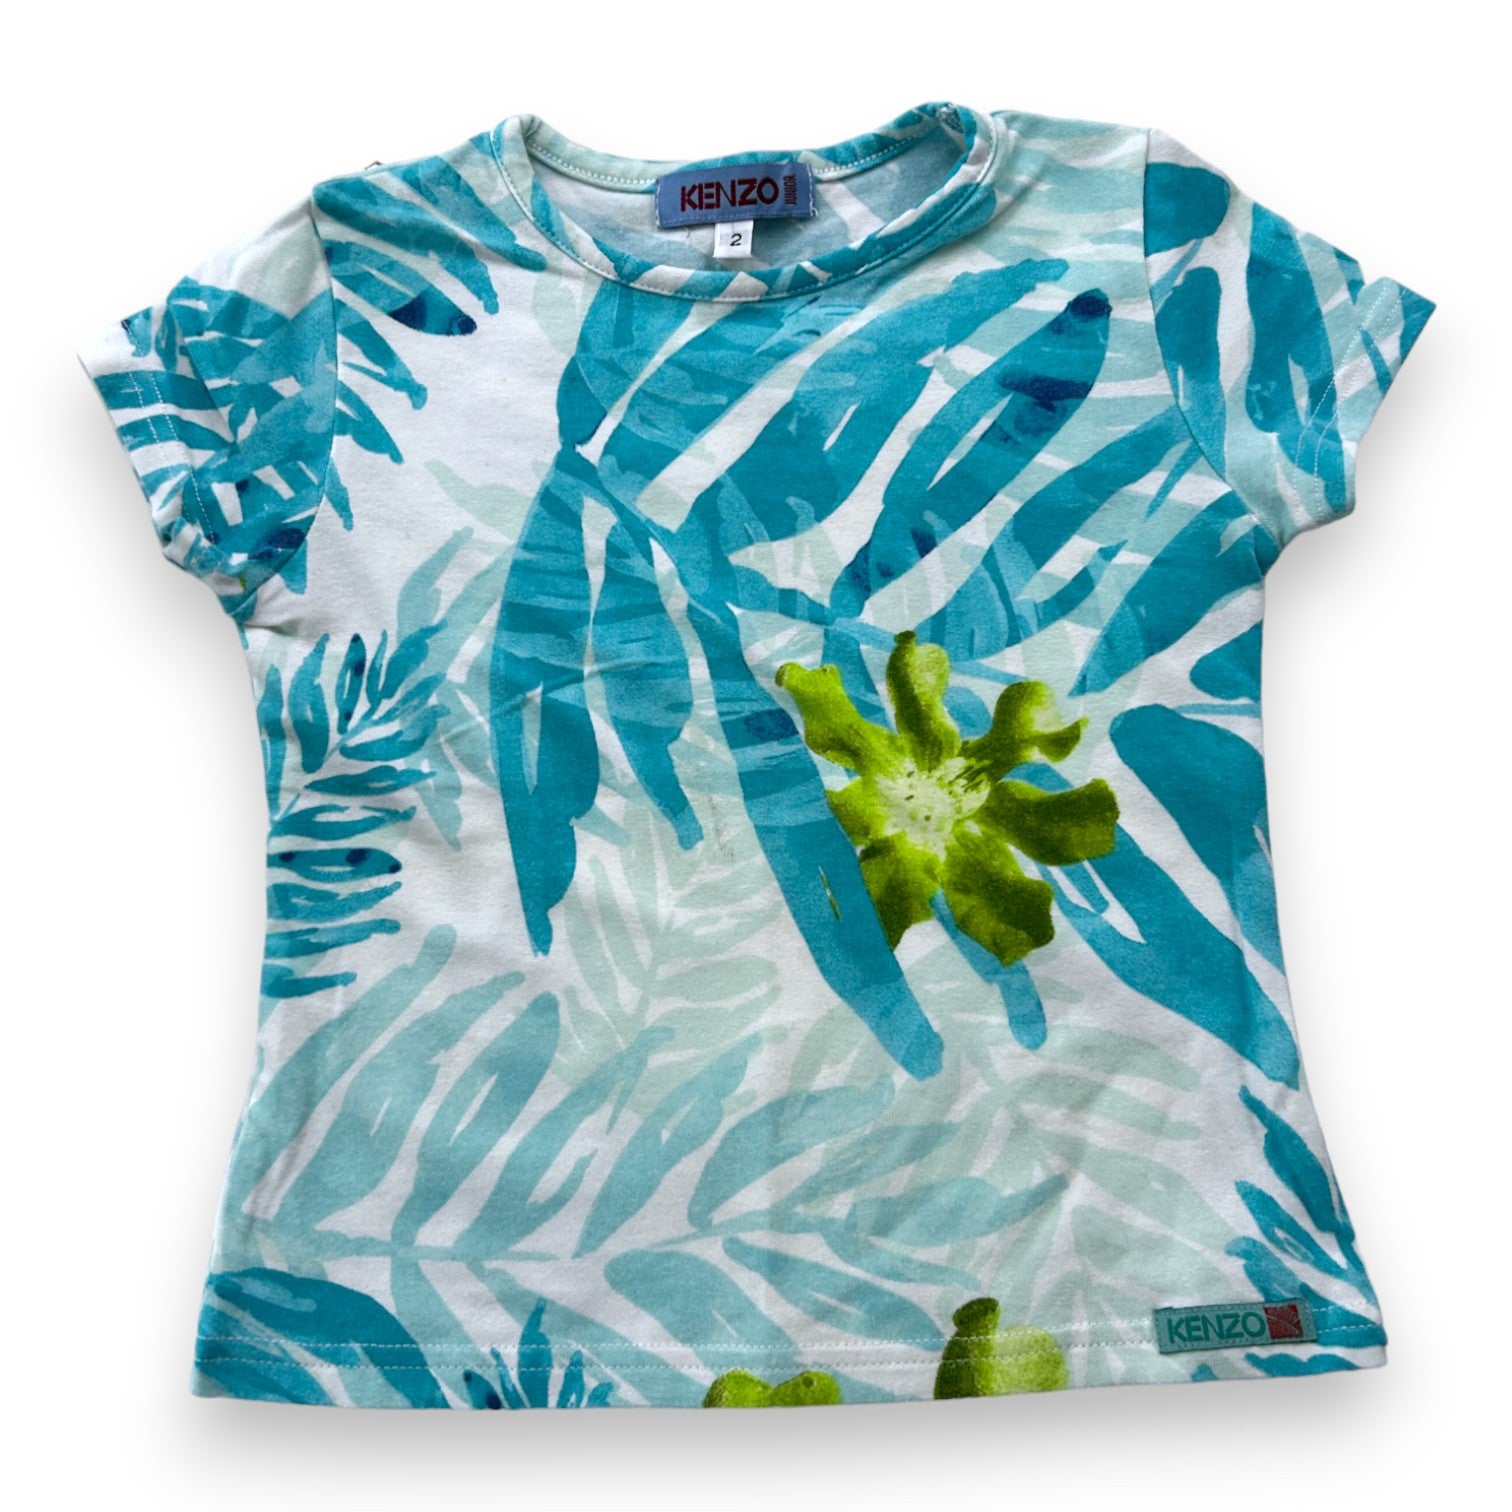 KENZO - T-shirt bleu à motifs feuilles - 2 ans